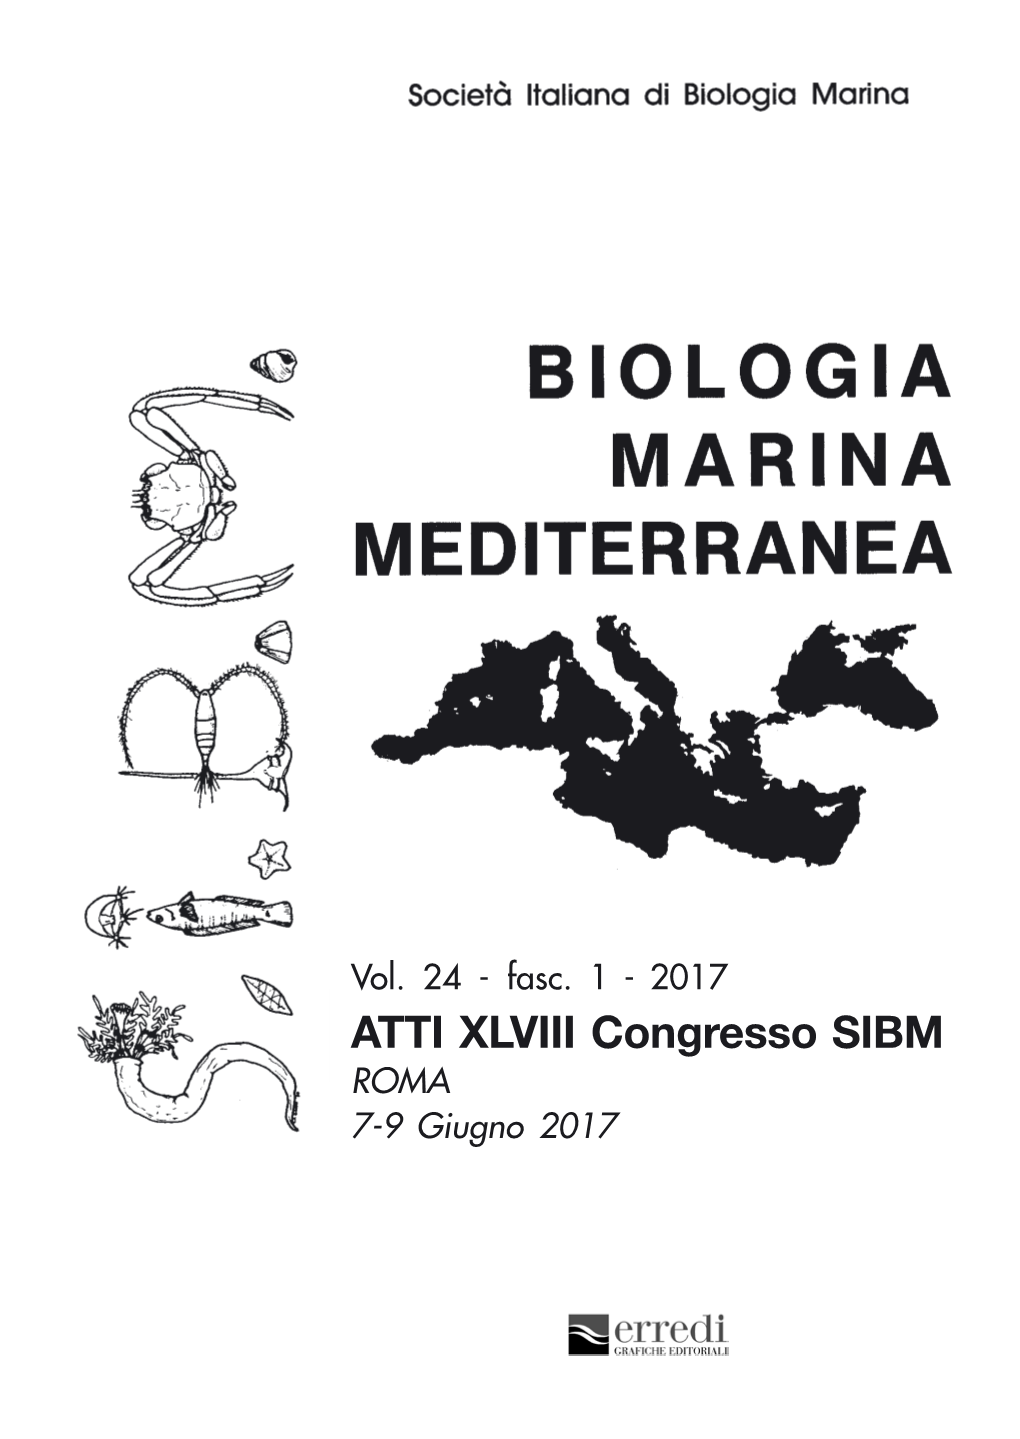 ATTI XLVIII Congresso SIBM ROMA 7-9 Giugno 2017 Biologia Marina Mediterranea (Biol